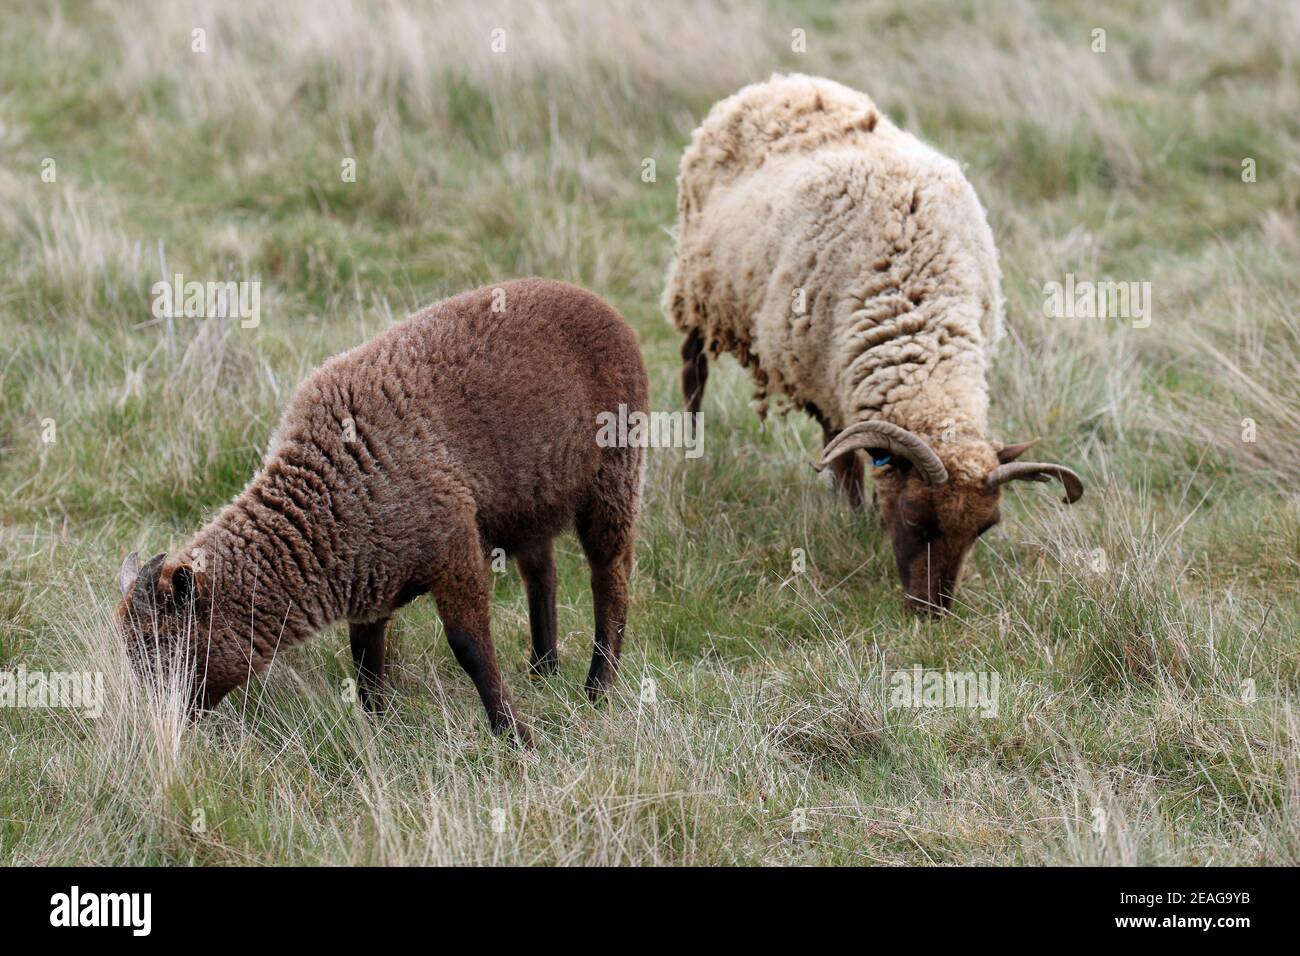 Manx Loaghtan Mutterschafe seltene Rasse Schafe mit dunkelbraunen Kopf, Beine, helleres braunes Fell, gewellte Hörner mit einem dunkelbraunen Lamm grasen auf einem rauen Grasfeld. Stockfoto